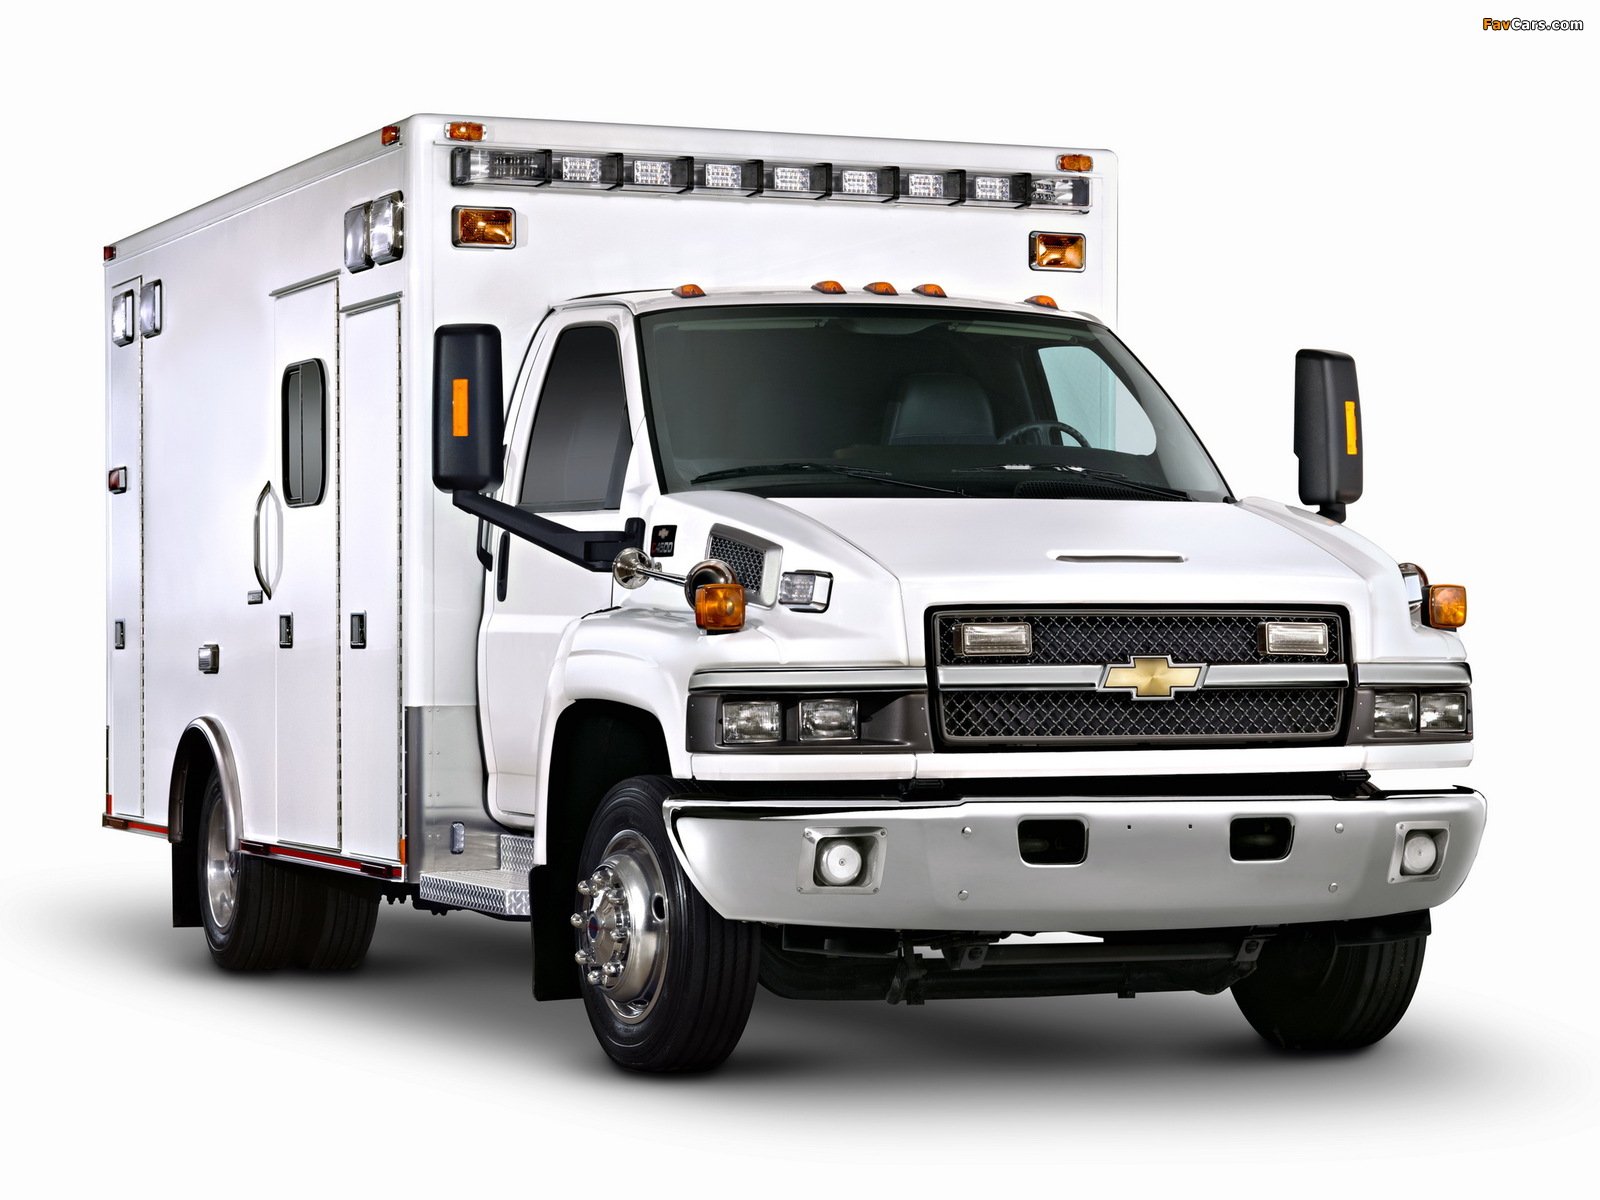 Chevrolet Express C4500 Ambulance 2010 photos (1600 x 1200)